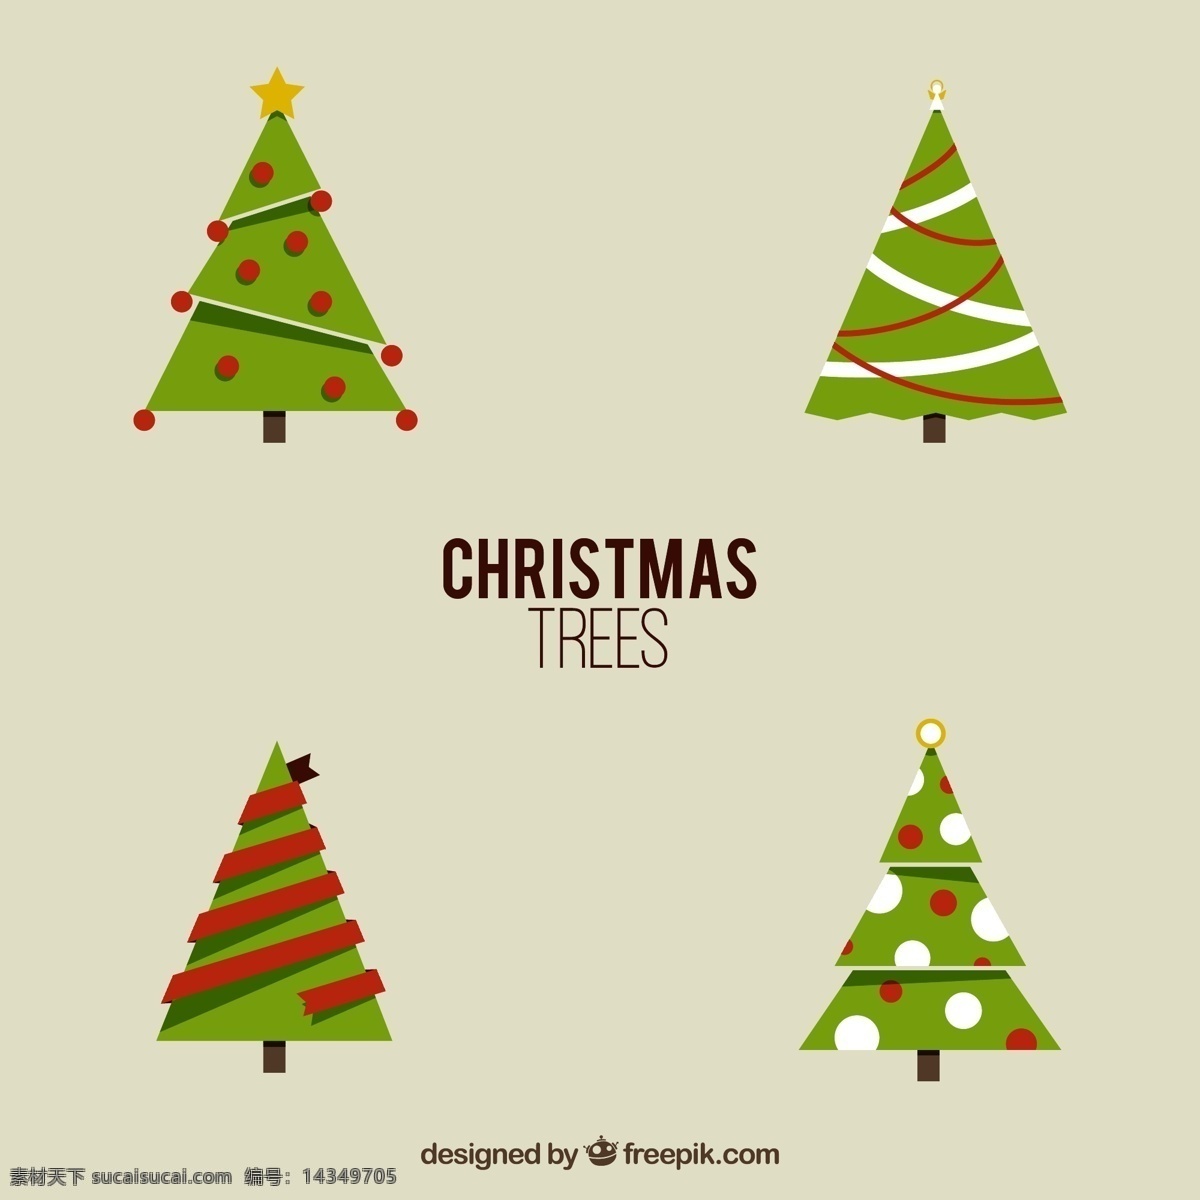 几何 圣诞树 集合 圣诞快乐 冬天快乐 圣诞 庆祝 节日 树 节日快乐 季节 快乐 十二月 灰色